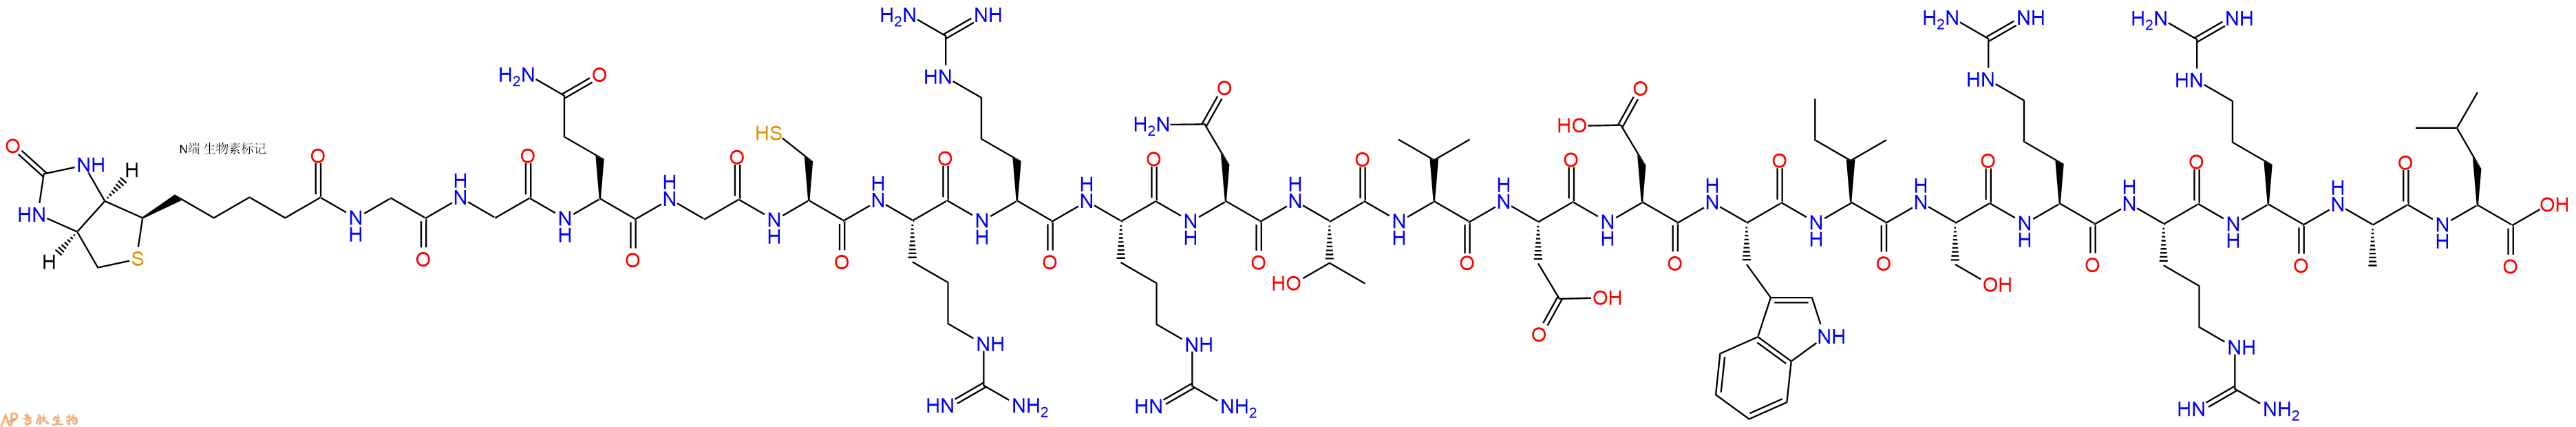 专肽生物产品Biotin-Gly-Gly-Gln-Gly-Cys-Arg-Arg-Arg-Asn-Thr-Val